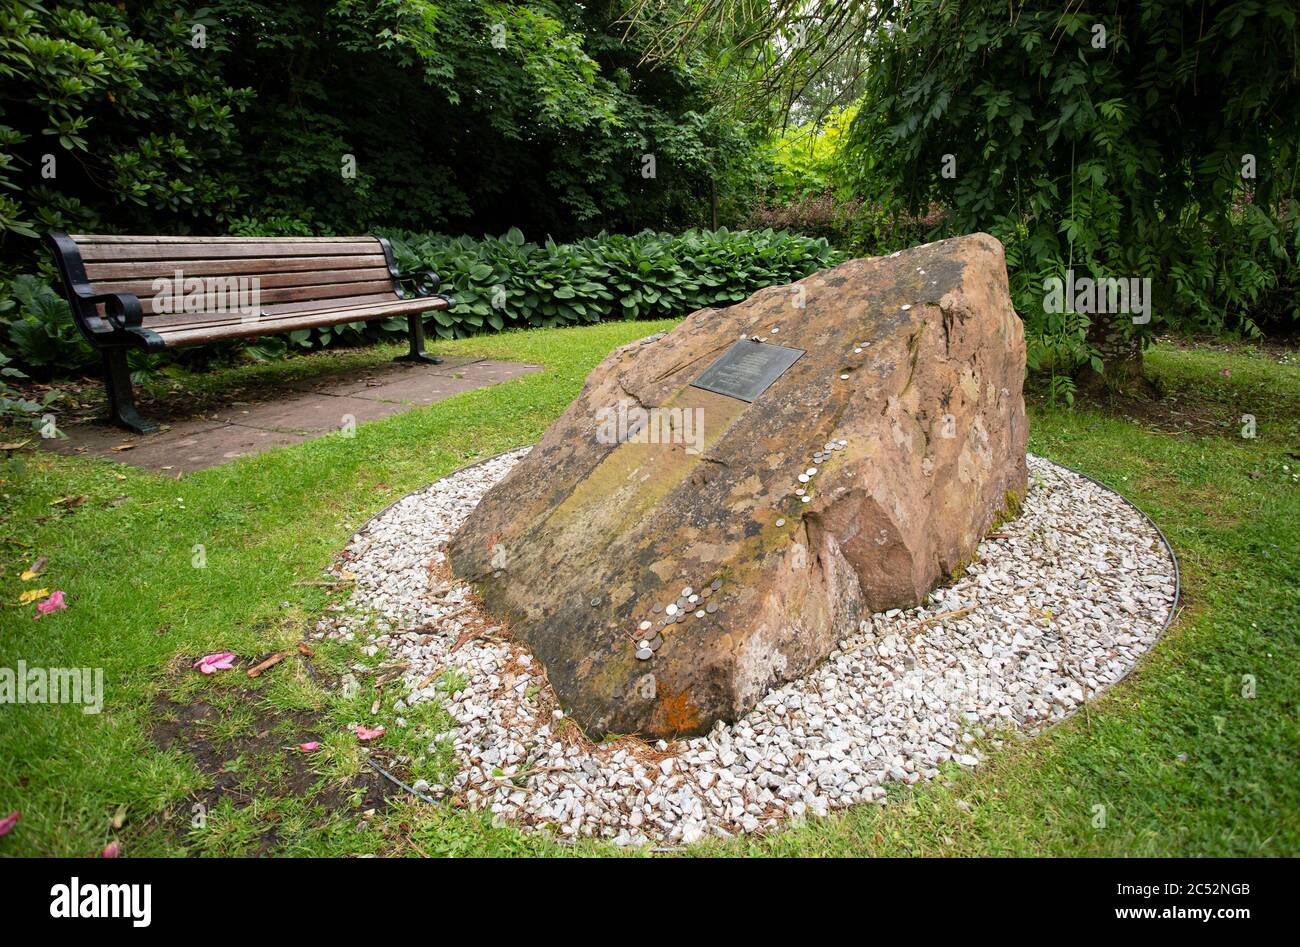 Monumento al desastre de Lockerbie, vuelo 103 de Pan am, en Sherwood Crescent, Lockerbie, Escocia, Reino Unido Foto de stock